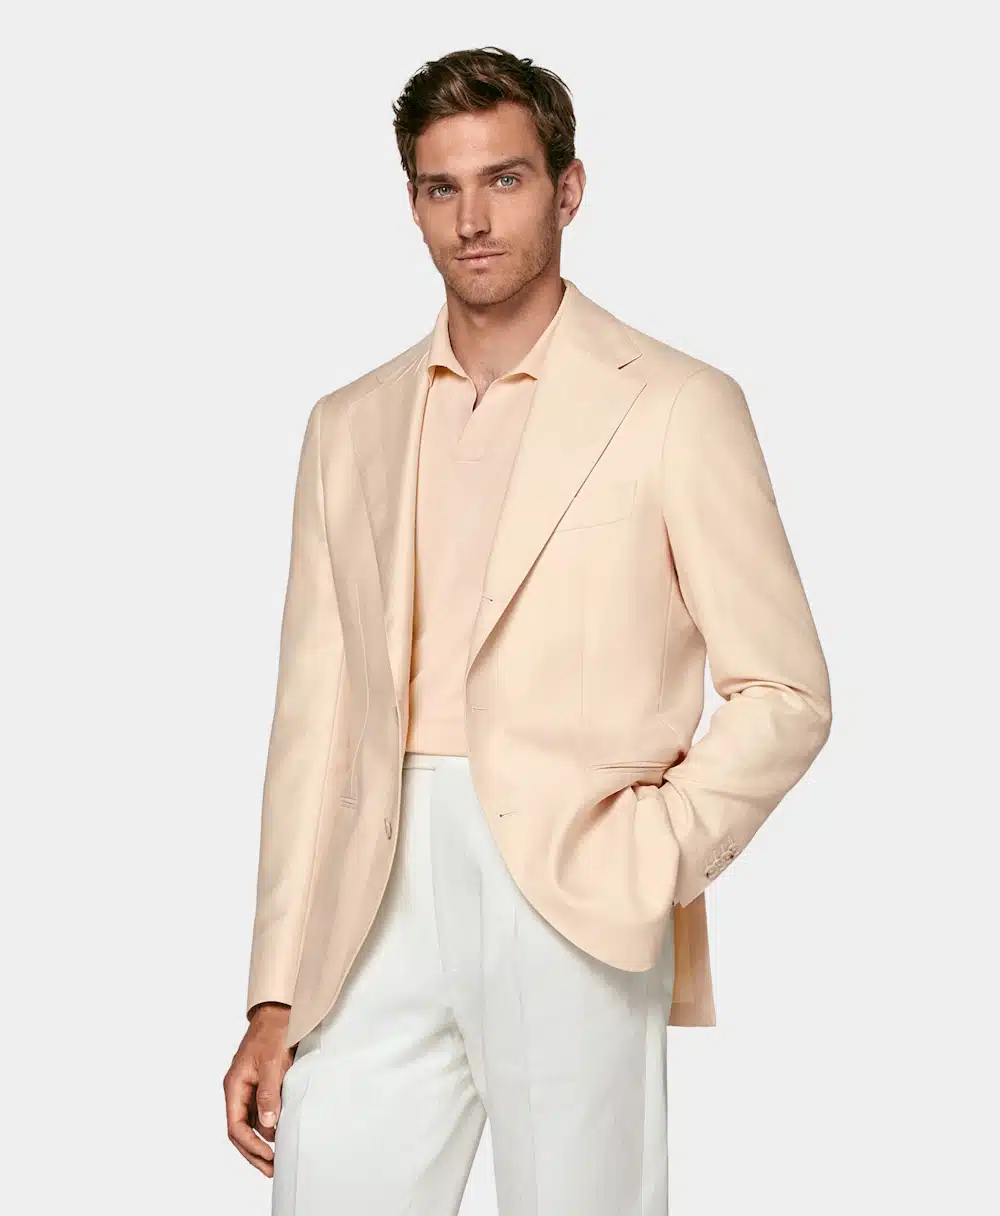 Свадебный наряд в стиле casual для мужчин: Что надеть, чтобы соблюсти дресс-код